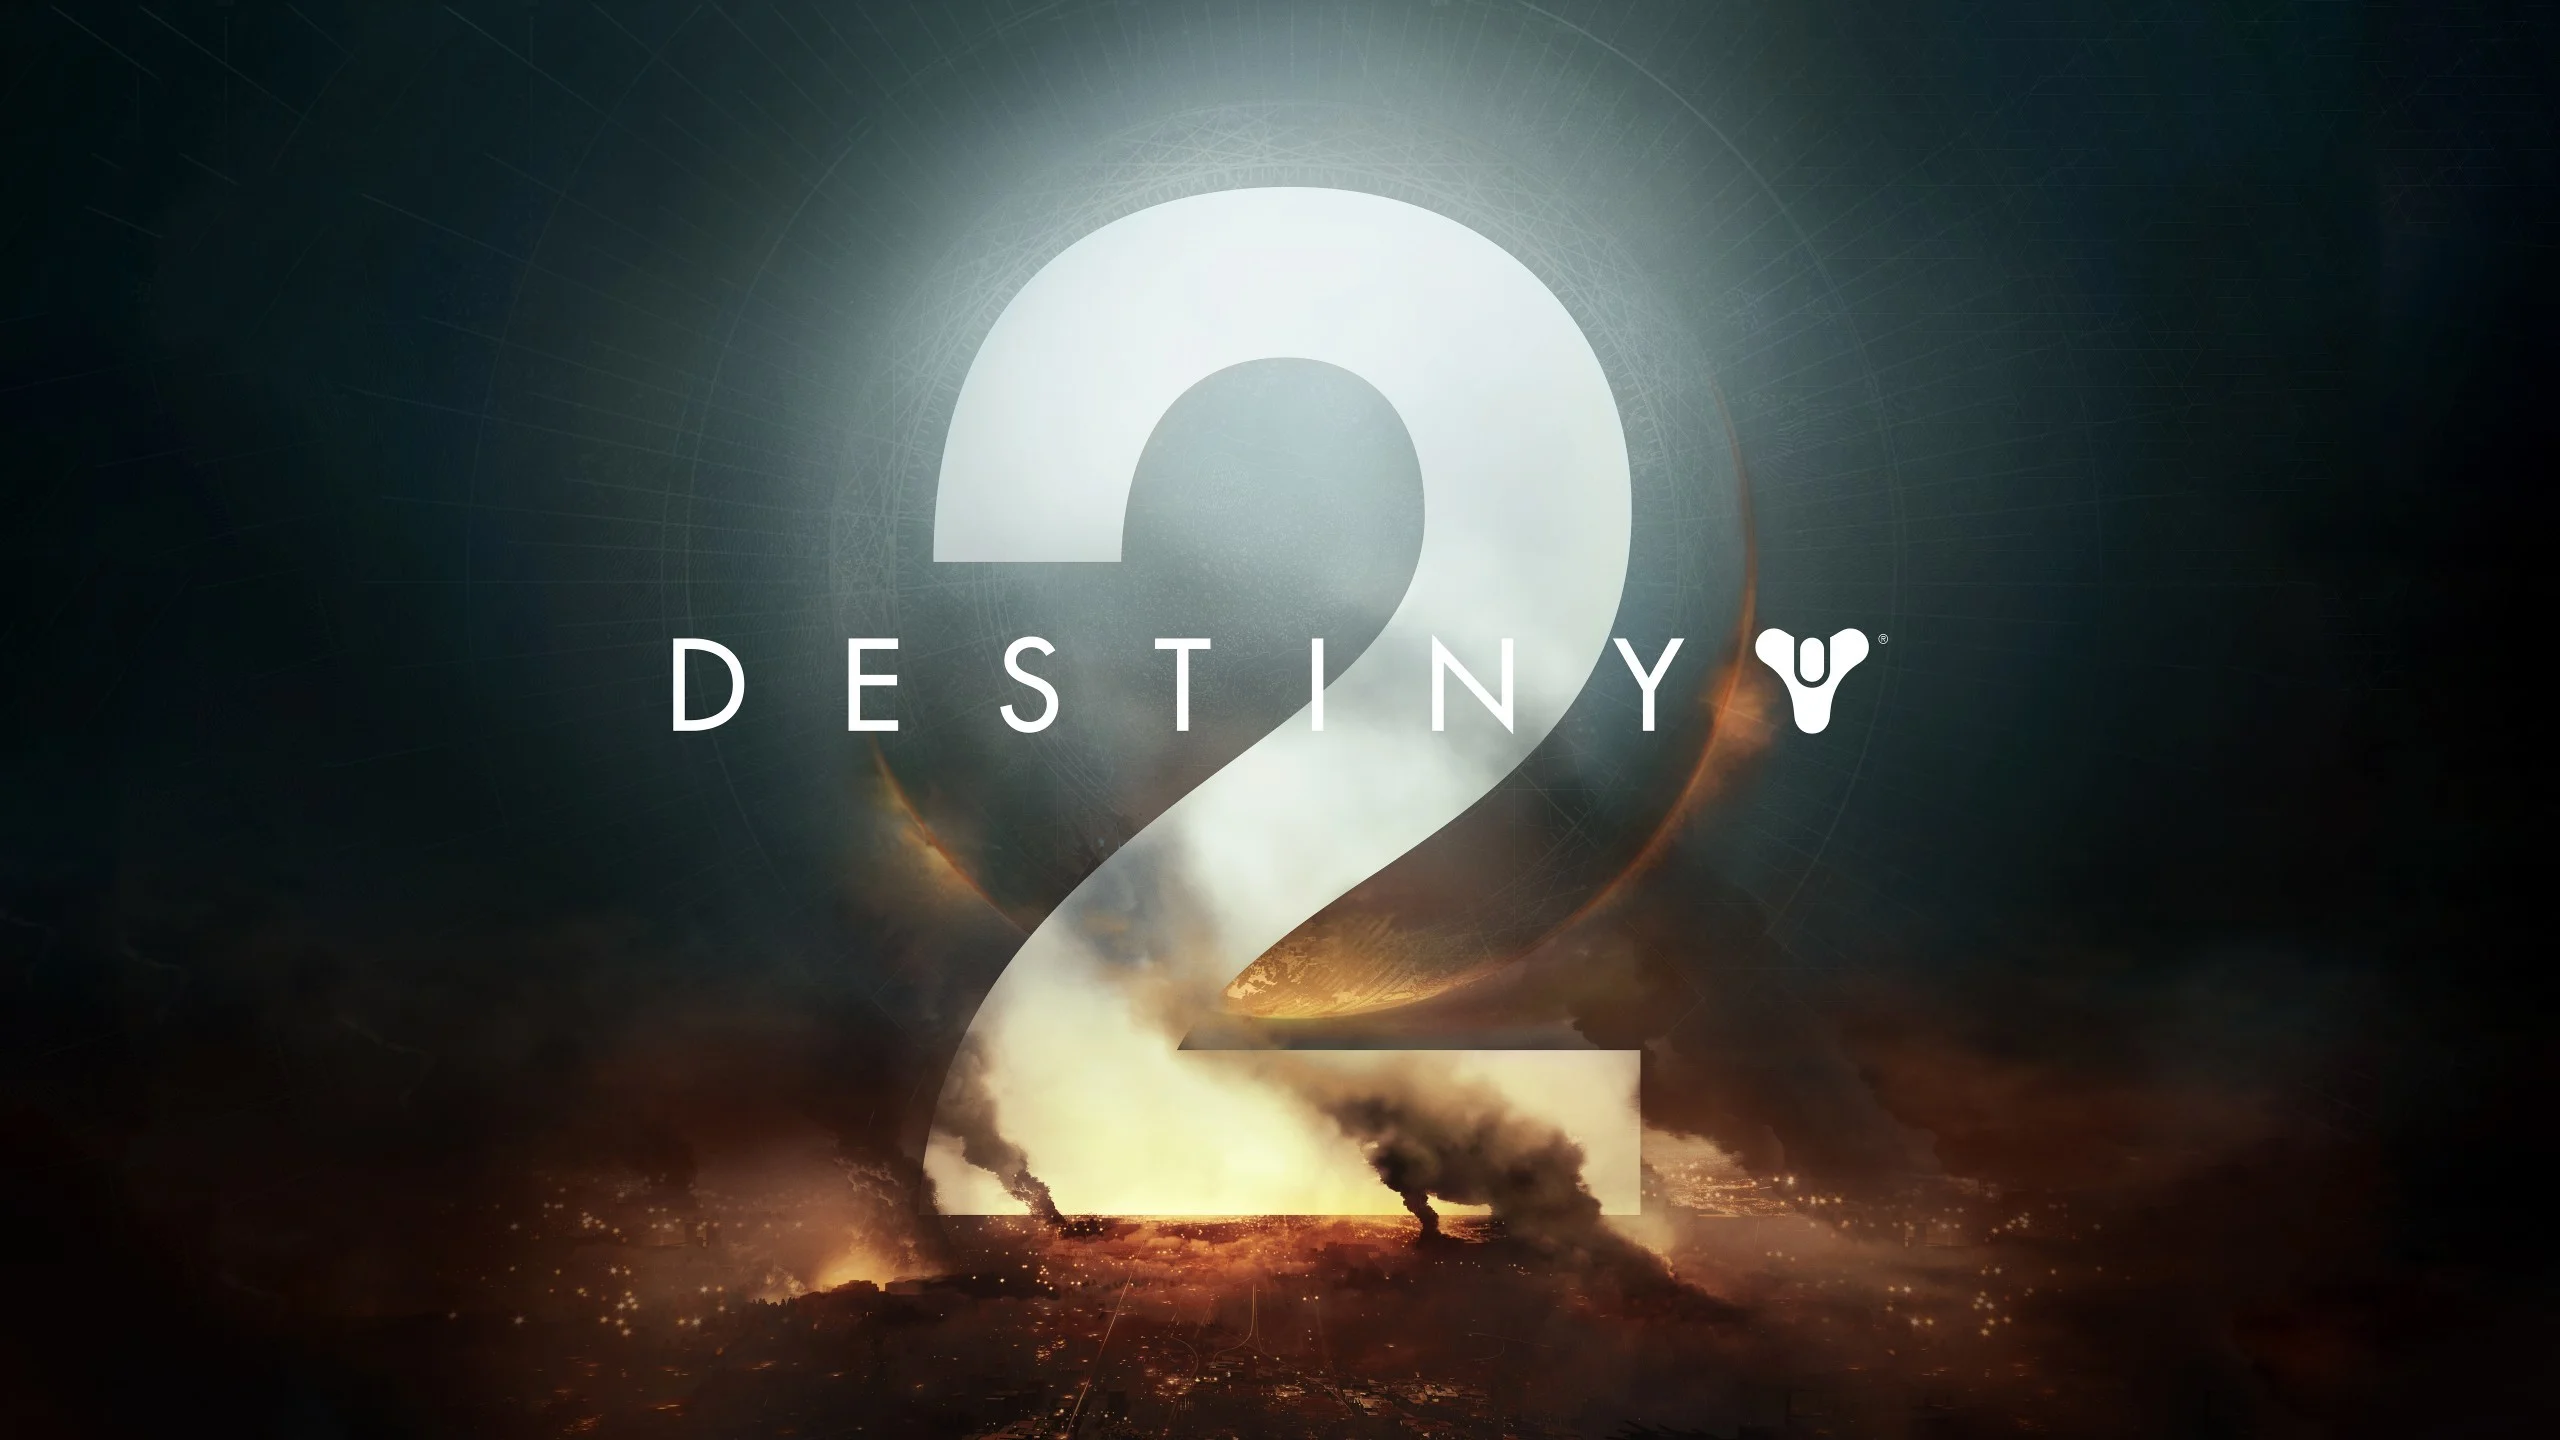 Games / Destiny 2 Wallpaper